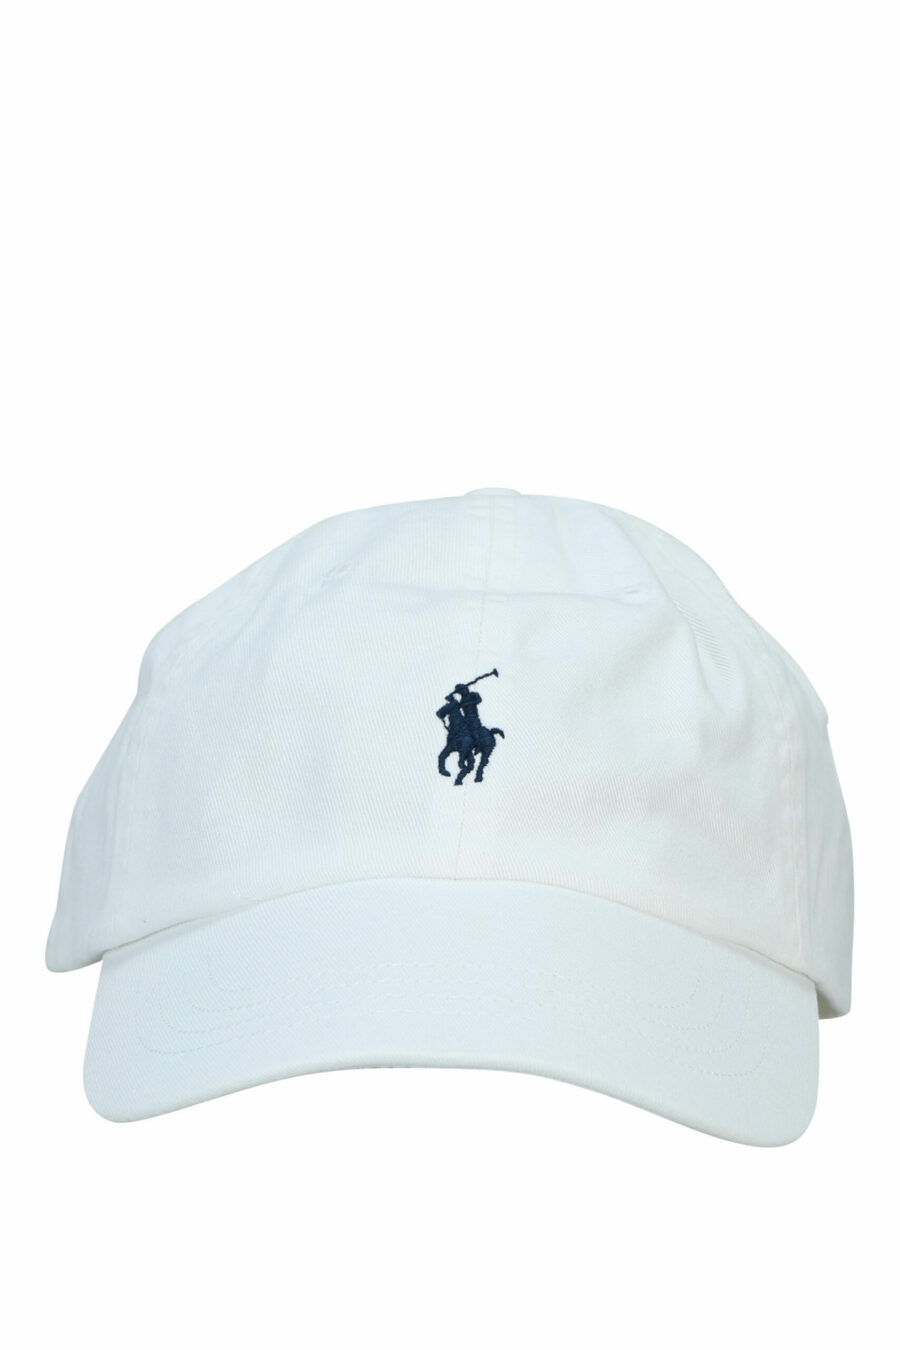 Weiße Mütze mit Mini-Logo "Polo" - 3616531139408 skaliert